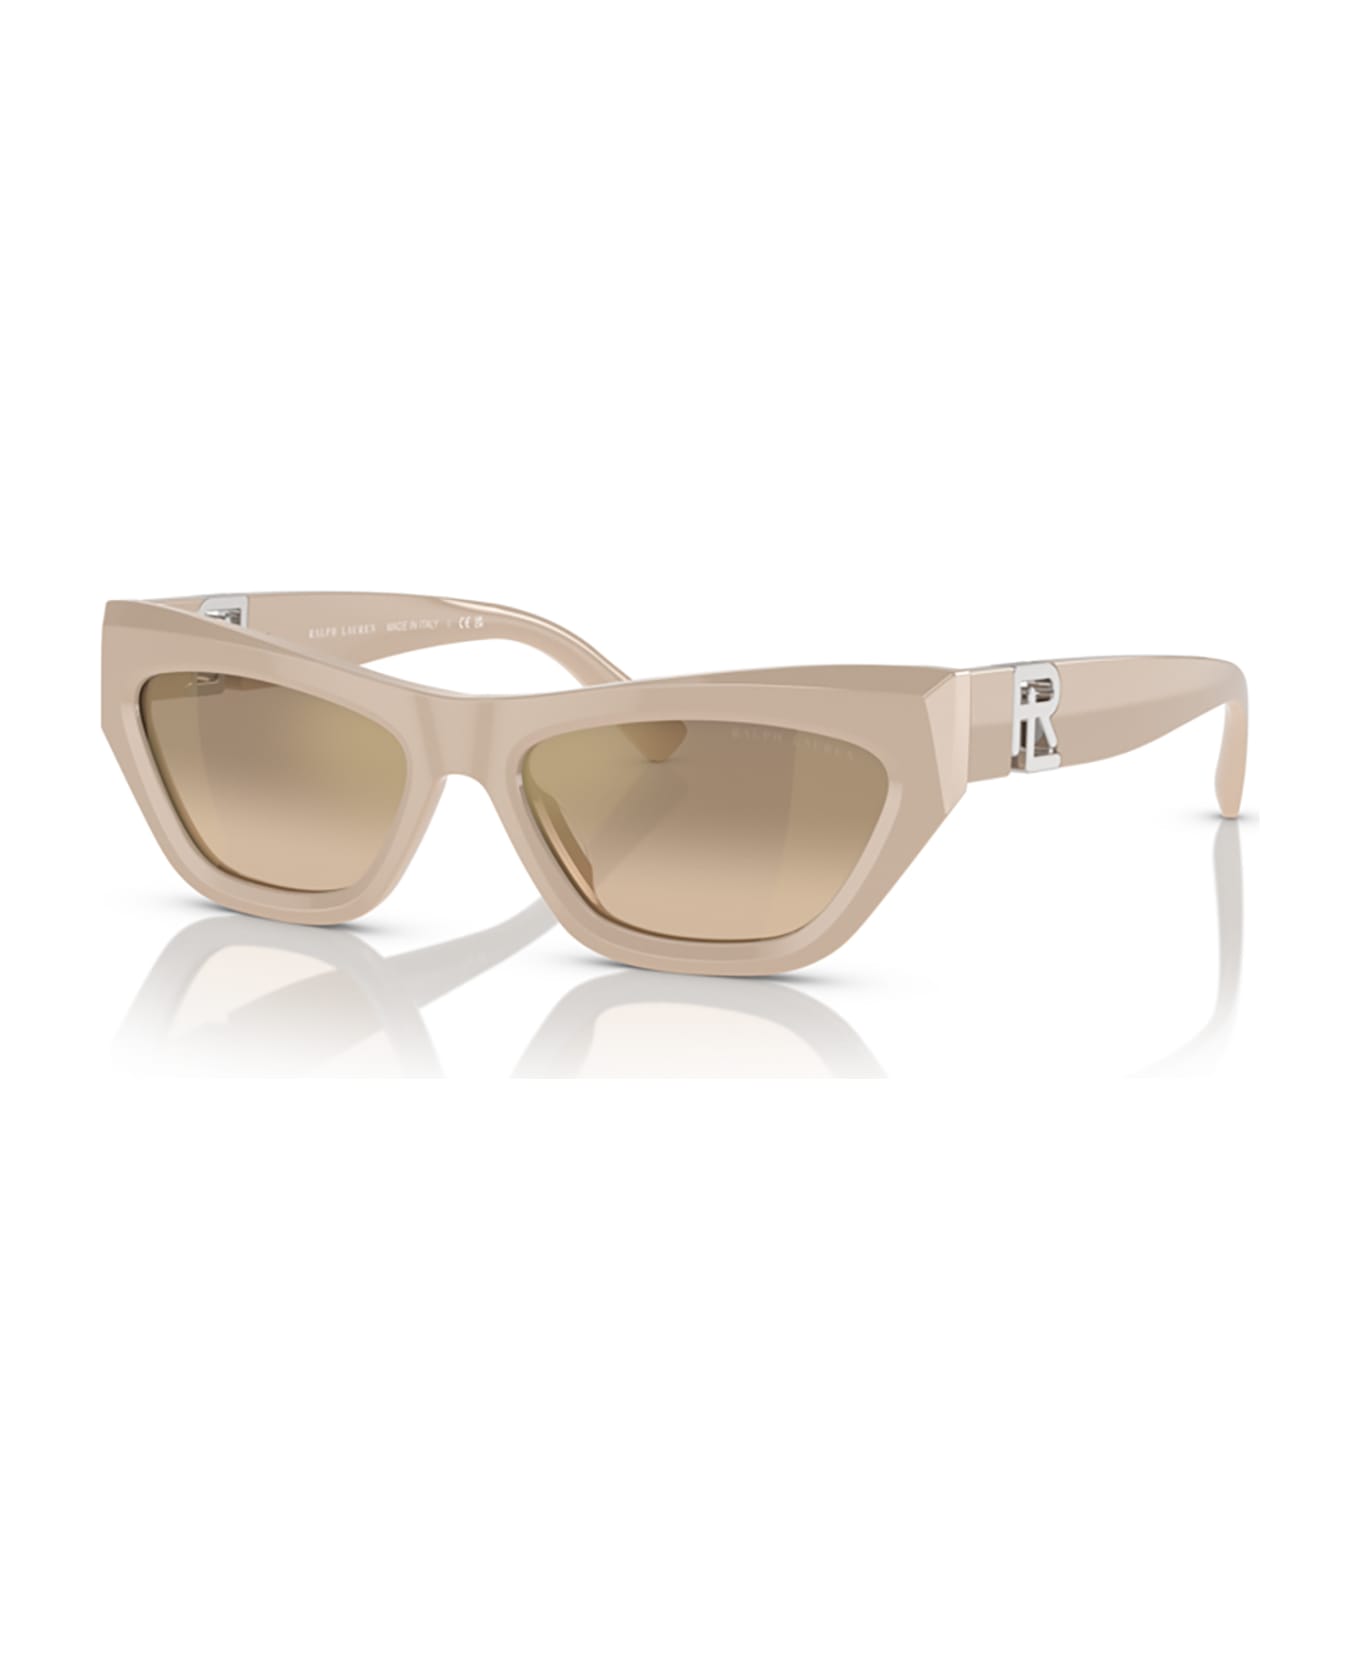 Ralph Lauren Rl8218u Solid Beige Sunglasses - Solid Beige